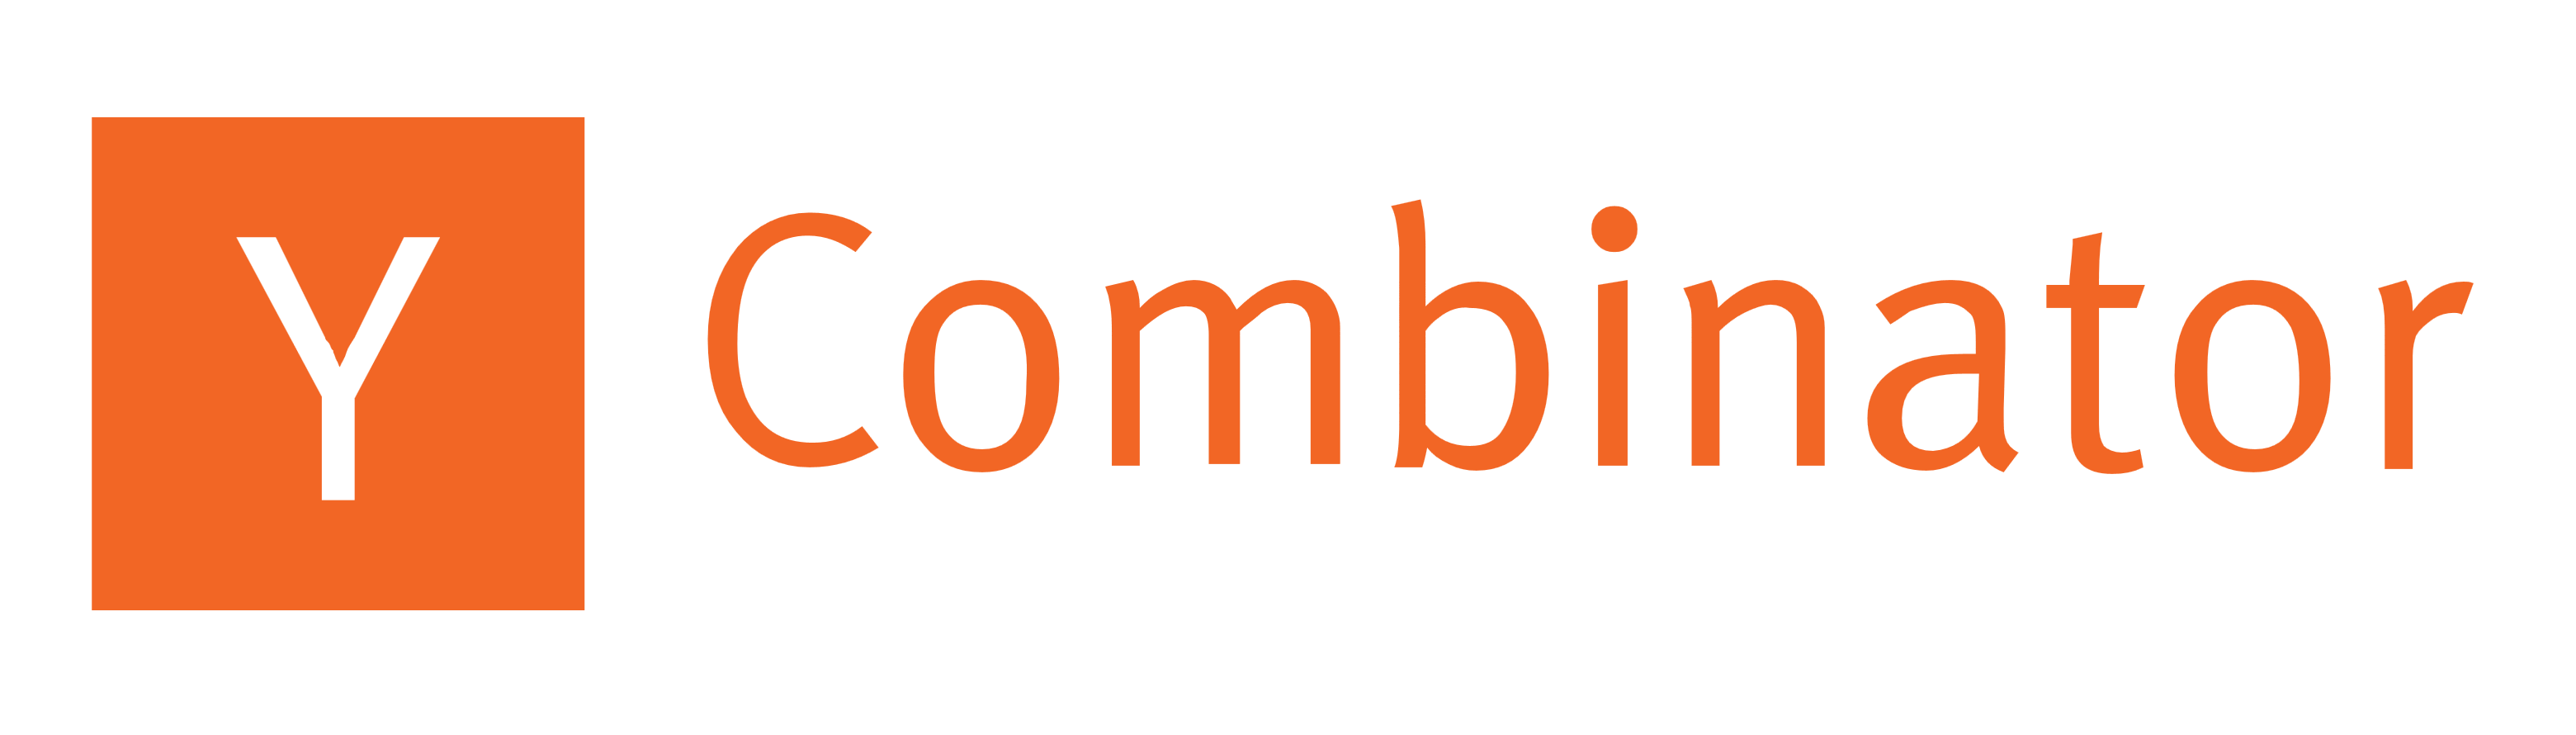 Y combinator logo text wordmark